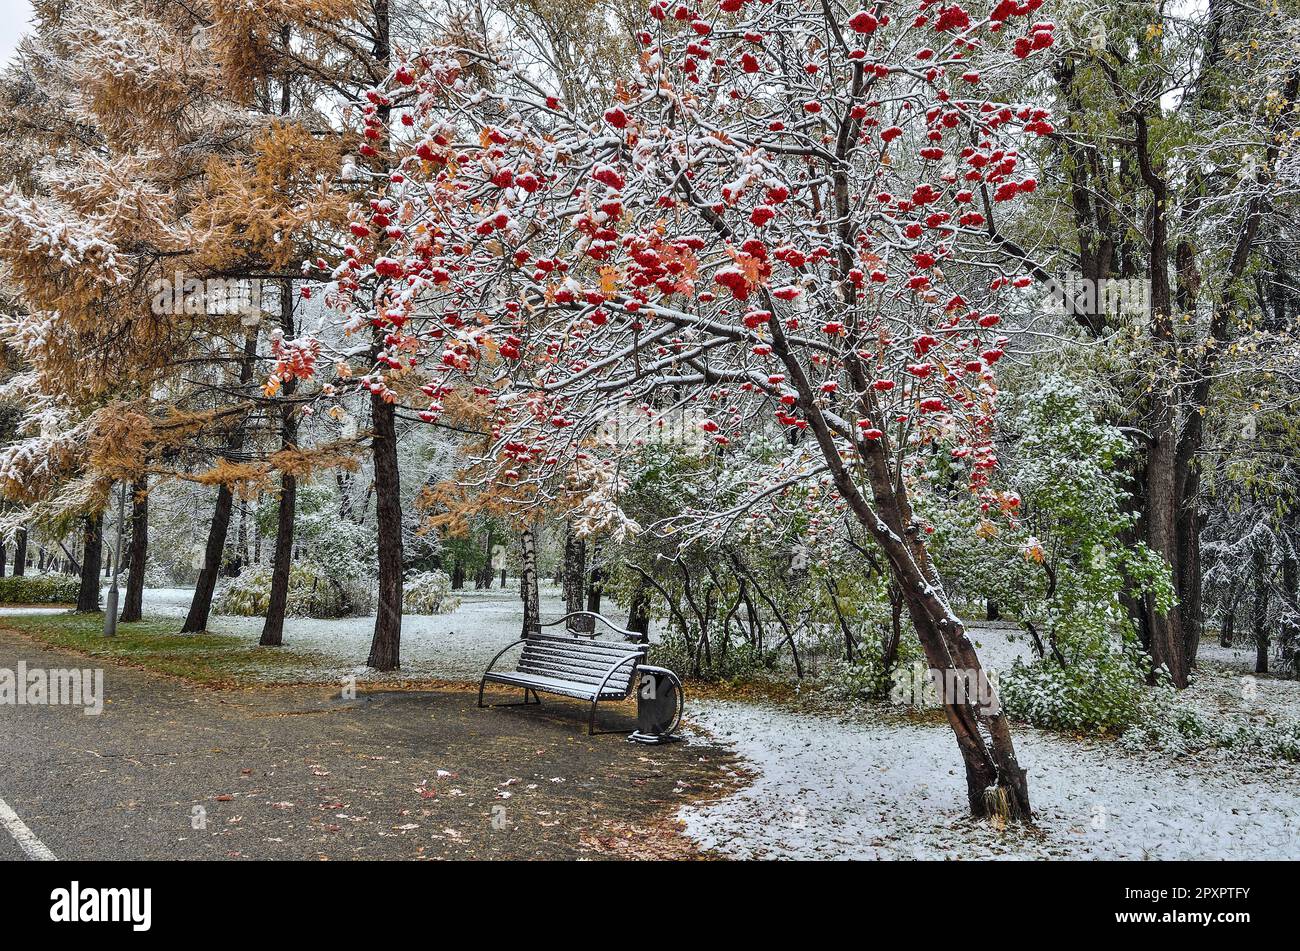 Première chute de neige dans le parc de la ville - paysage de la fin de l'automne ou du début de l'hiver.Aiguilles dorées et moelleuses de mélèze, rowan avec feuillage rouge et baies, buissons a Banque D'Images